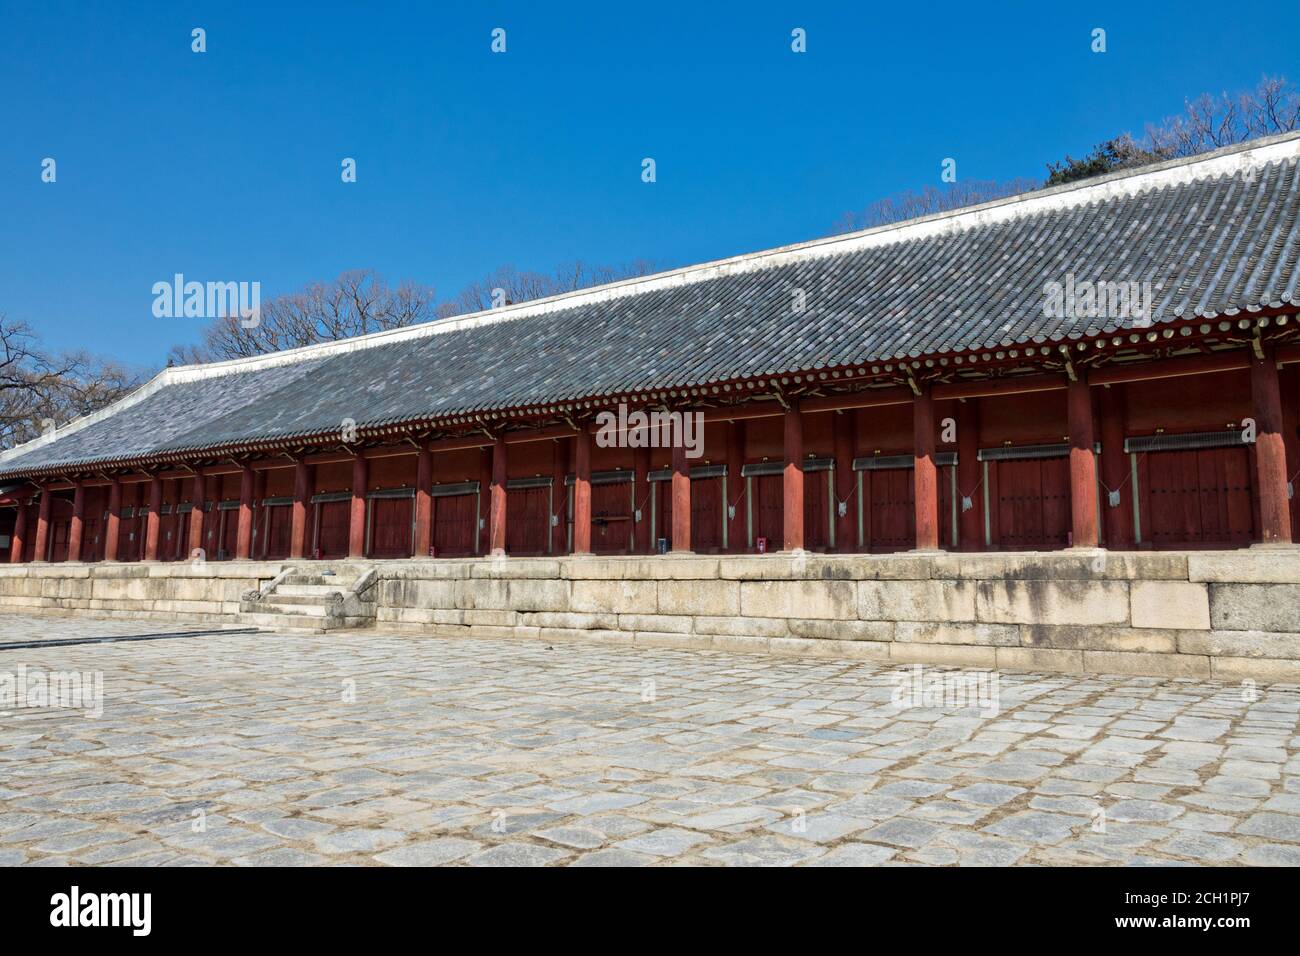 La salle de la paix éternelle au sanctuaire Jongmyo, un sanctuaire confucéen dédié aux chambres d'esprit des rois et reines décédés de la dynastie coréenne Joseon à Séoul, en Corée. Banque D'Images